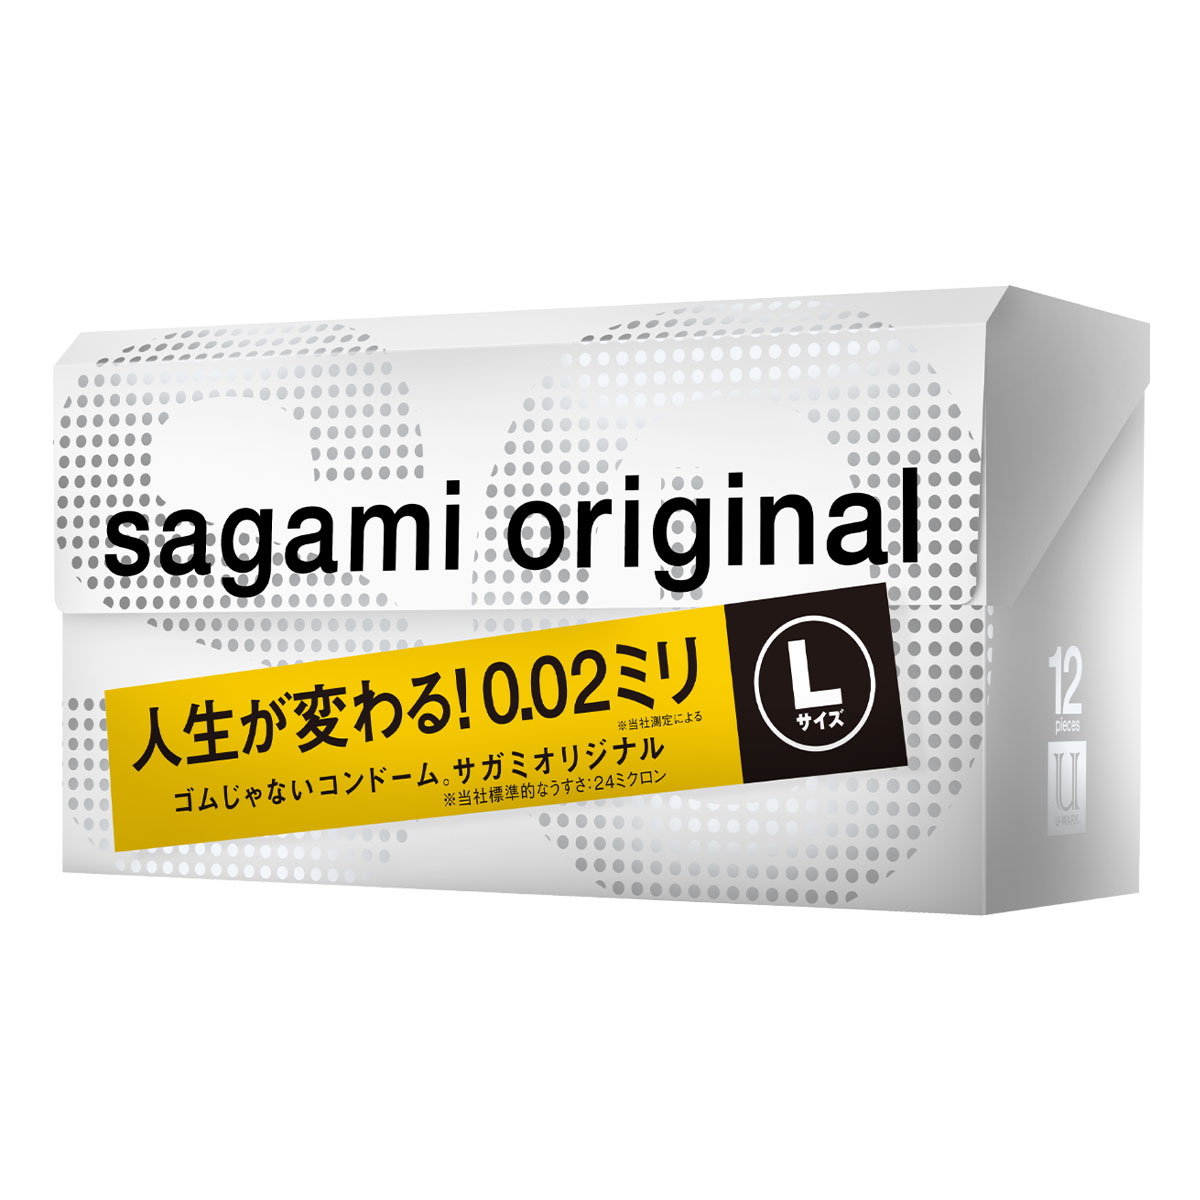 【極薄002保險套牌子】Sagami002相模超激薄保險套-L加大(12入)